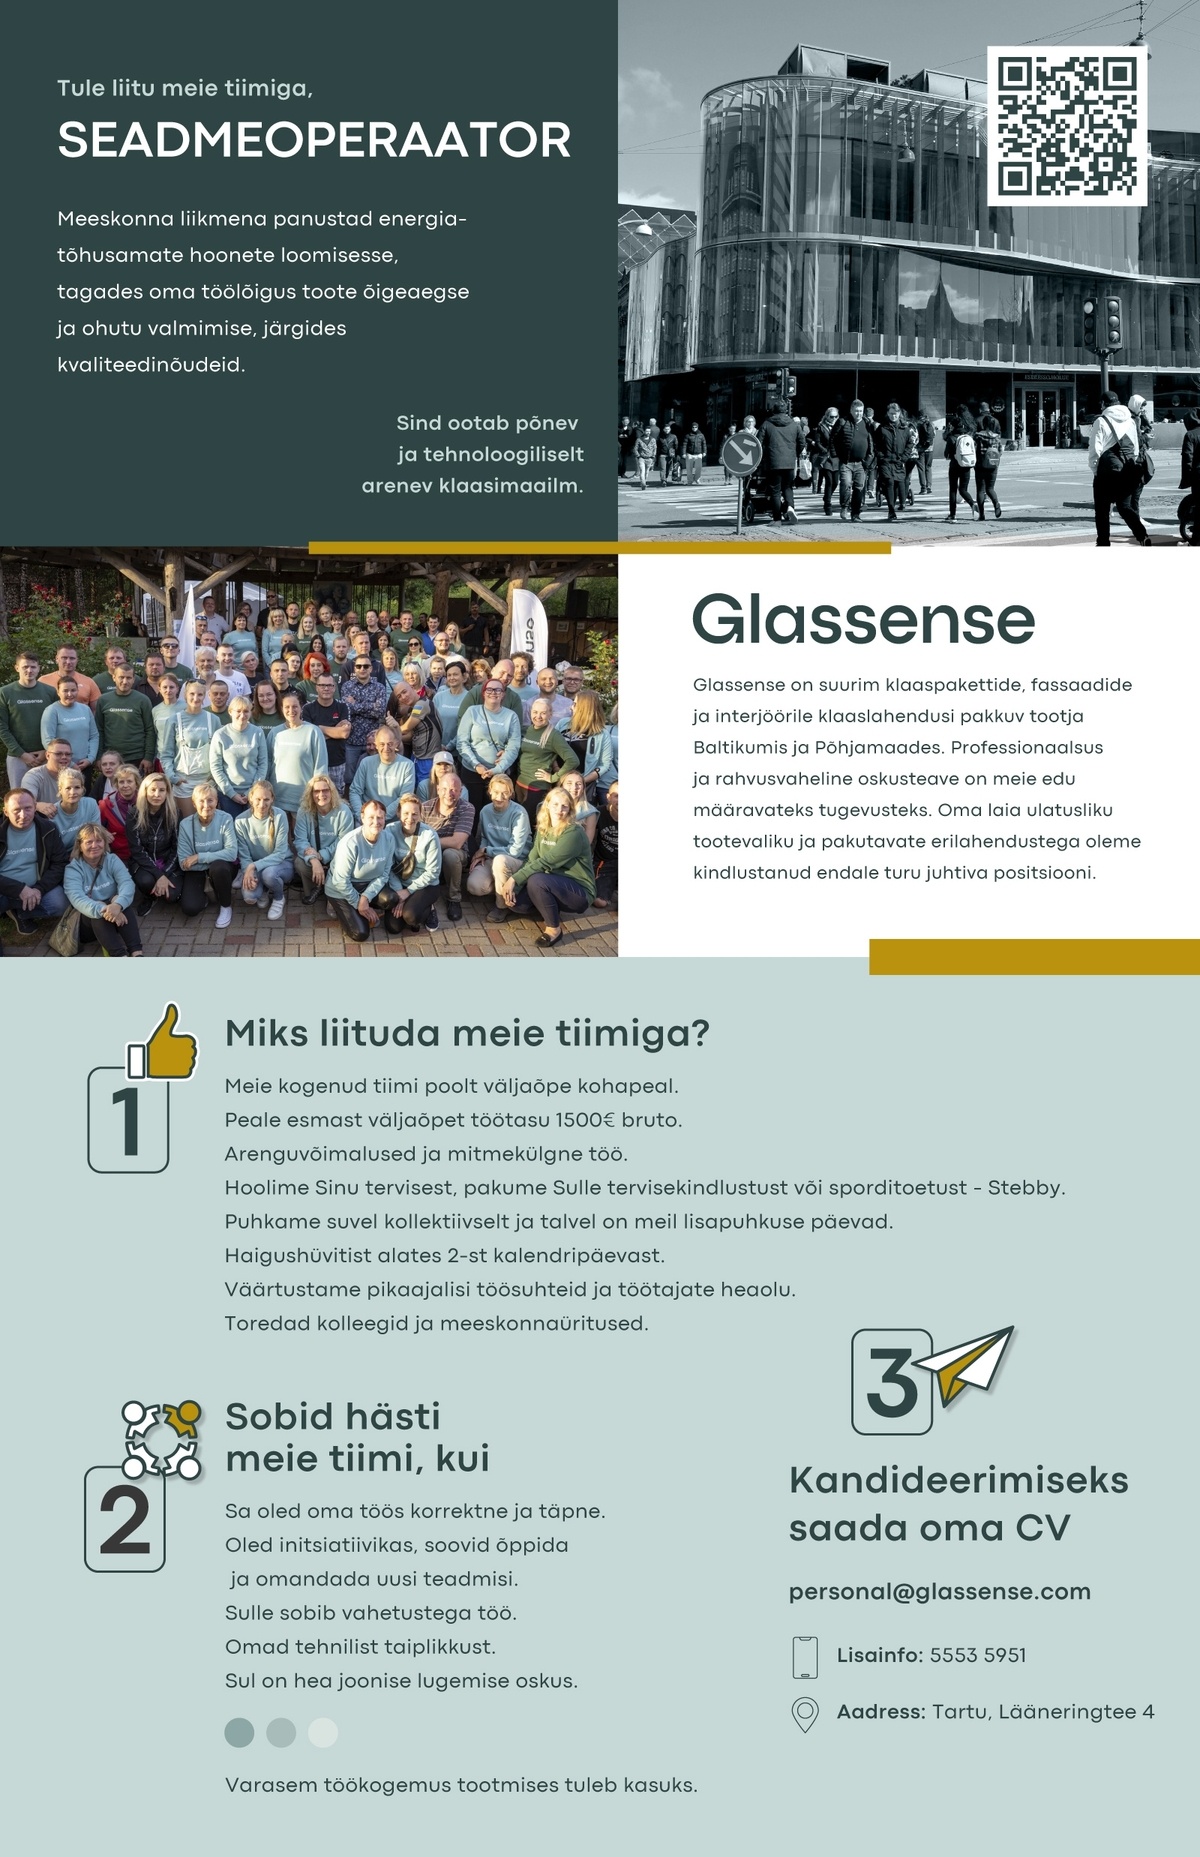 Glassense AS Seadmeoperaator